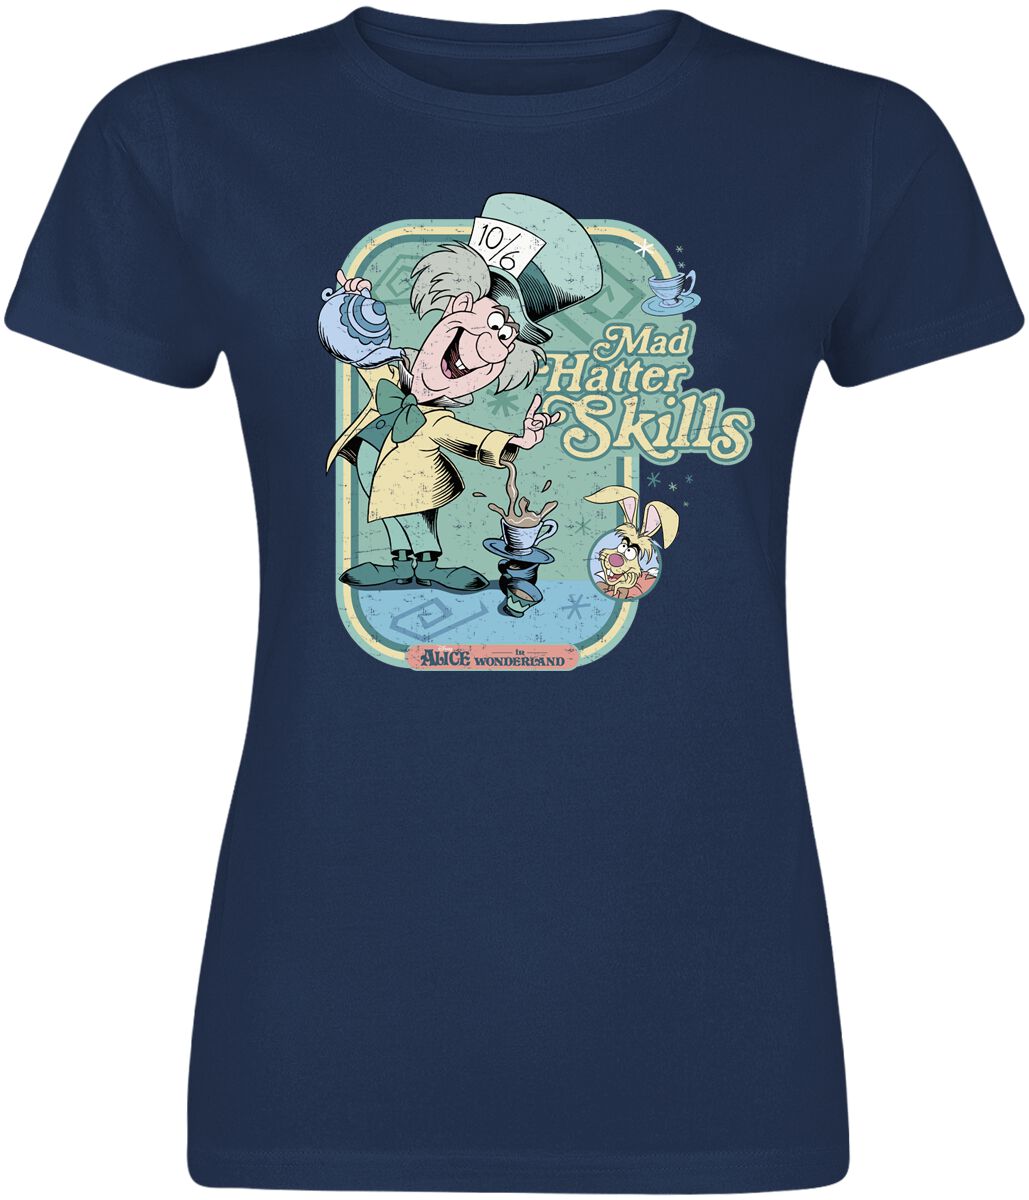 Alice im Wunderland - Disney T-Shirt - Mad hatter Skills - S bis XXL - für Damen - Größe M - navy  - EMP exklusives Merchandise!